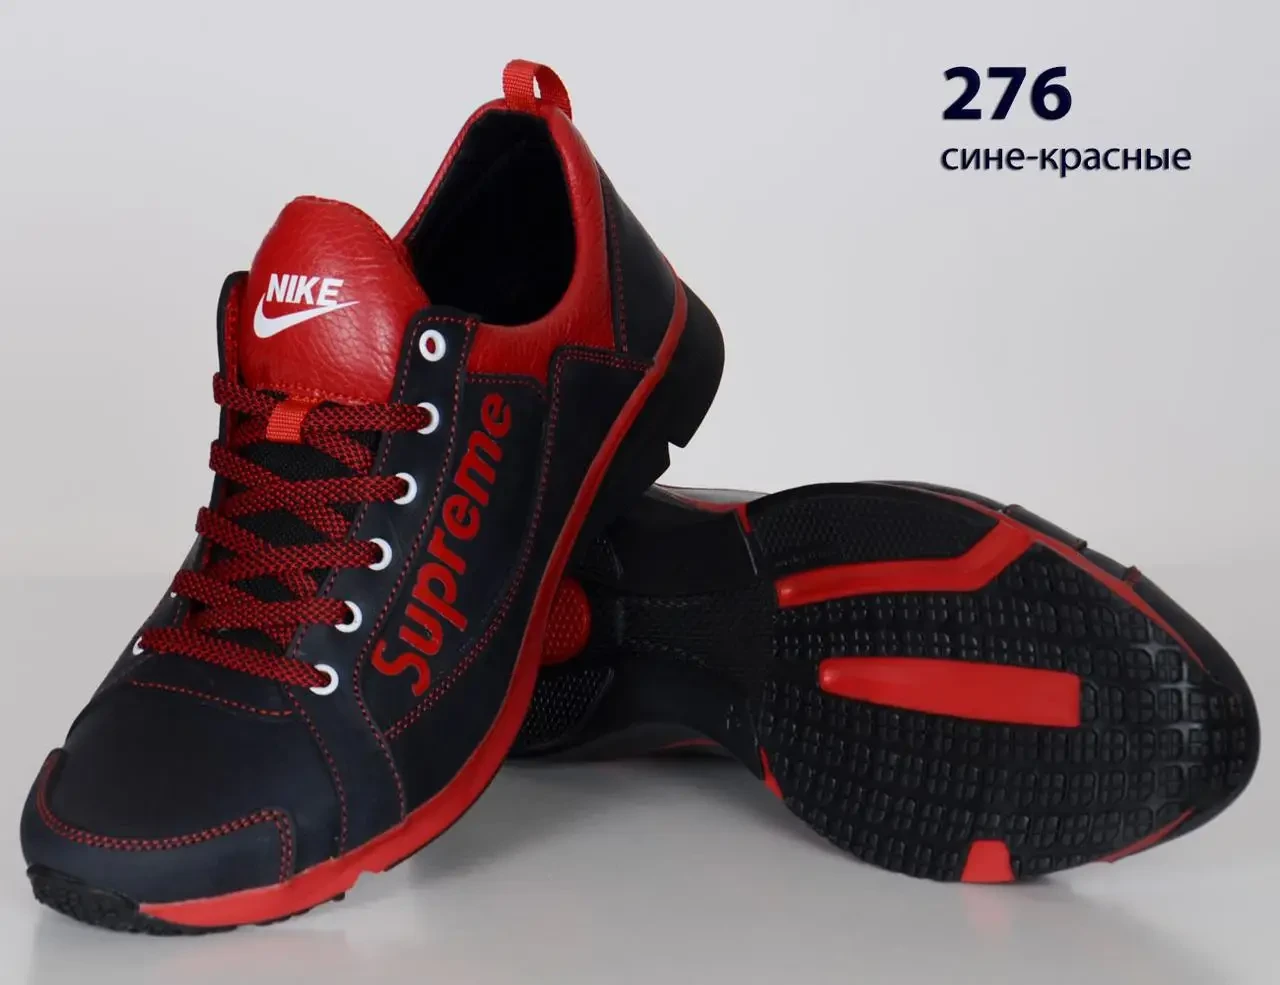 Шкіряні кросівки SUPREME  (276 синьо-червона) чоловічі спортивні кросівки шкіряні чоловічі